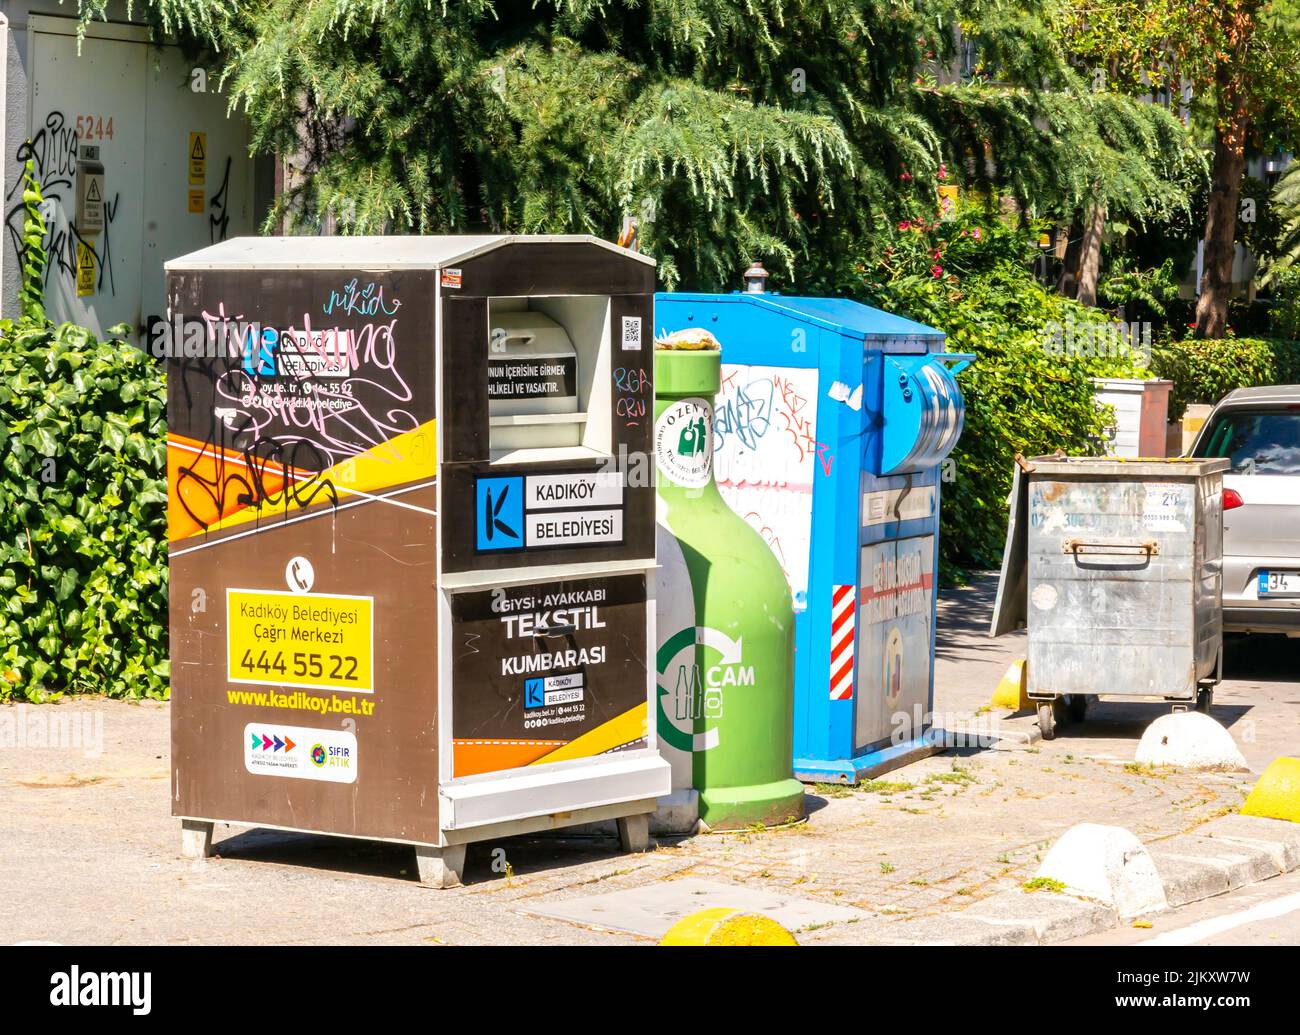 Grandes estaciones de eliminación de residuos separadas, marcadas con colores. Residuos textiles, de vidrio y plásticos. Kadikoy, Estambul, Turquía Foto de stock